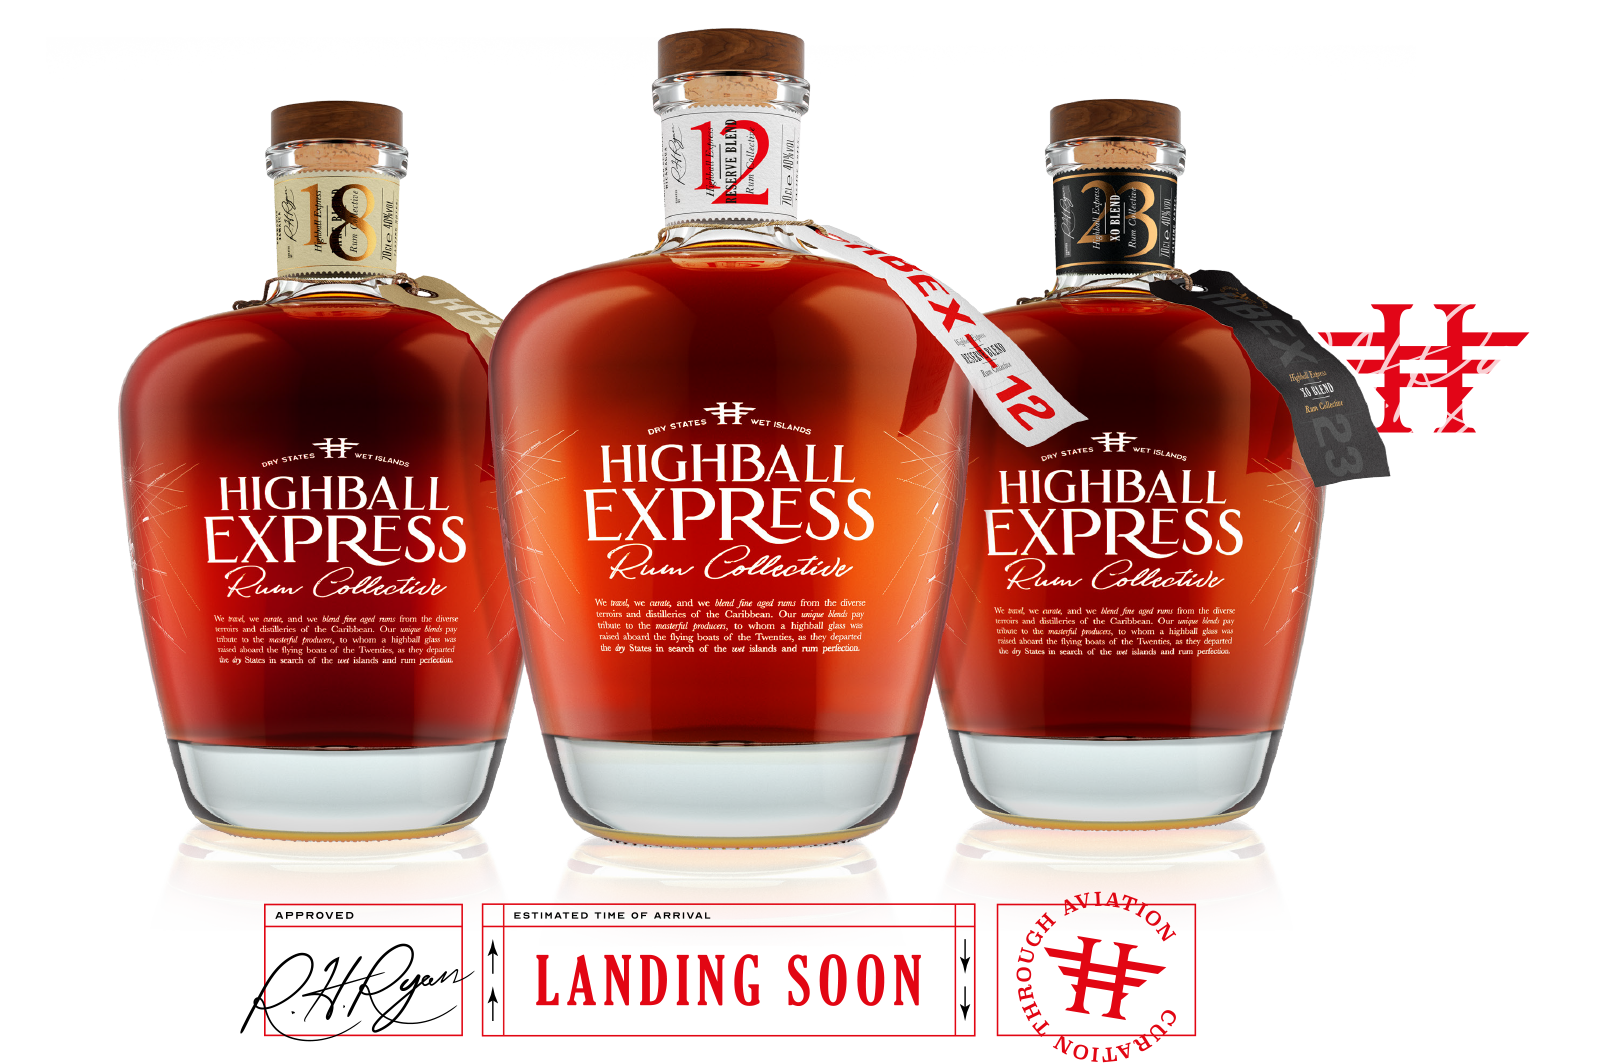 Highball Express bottles